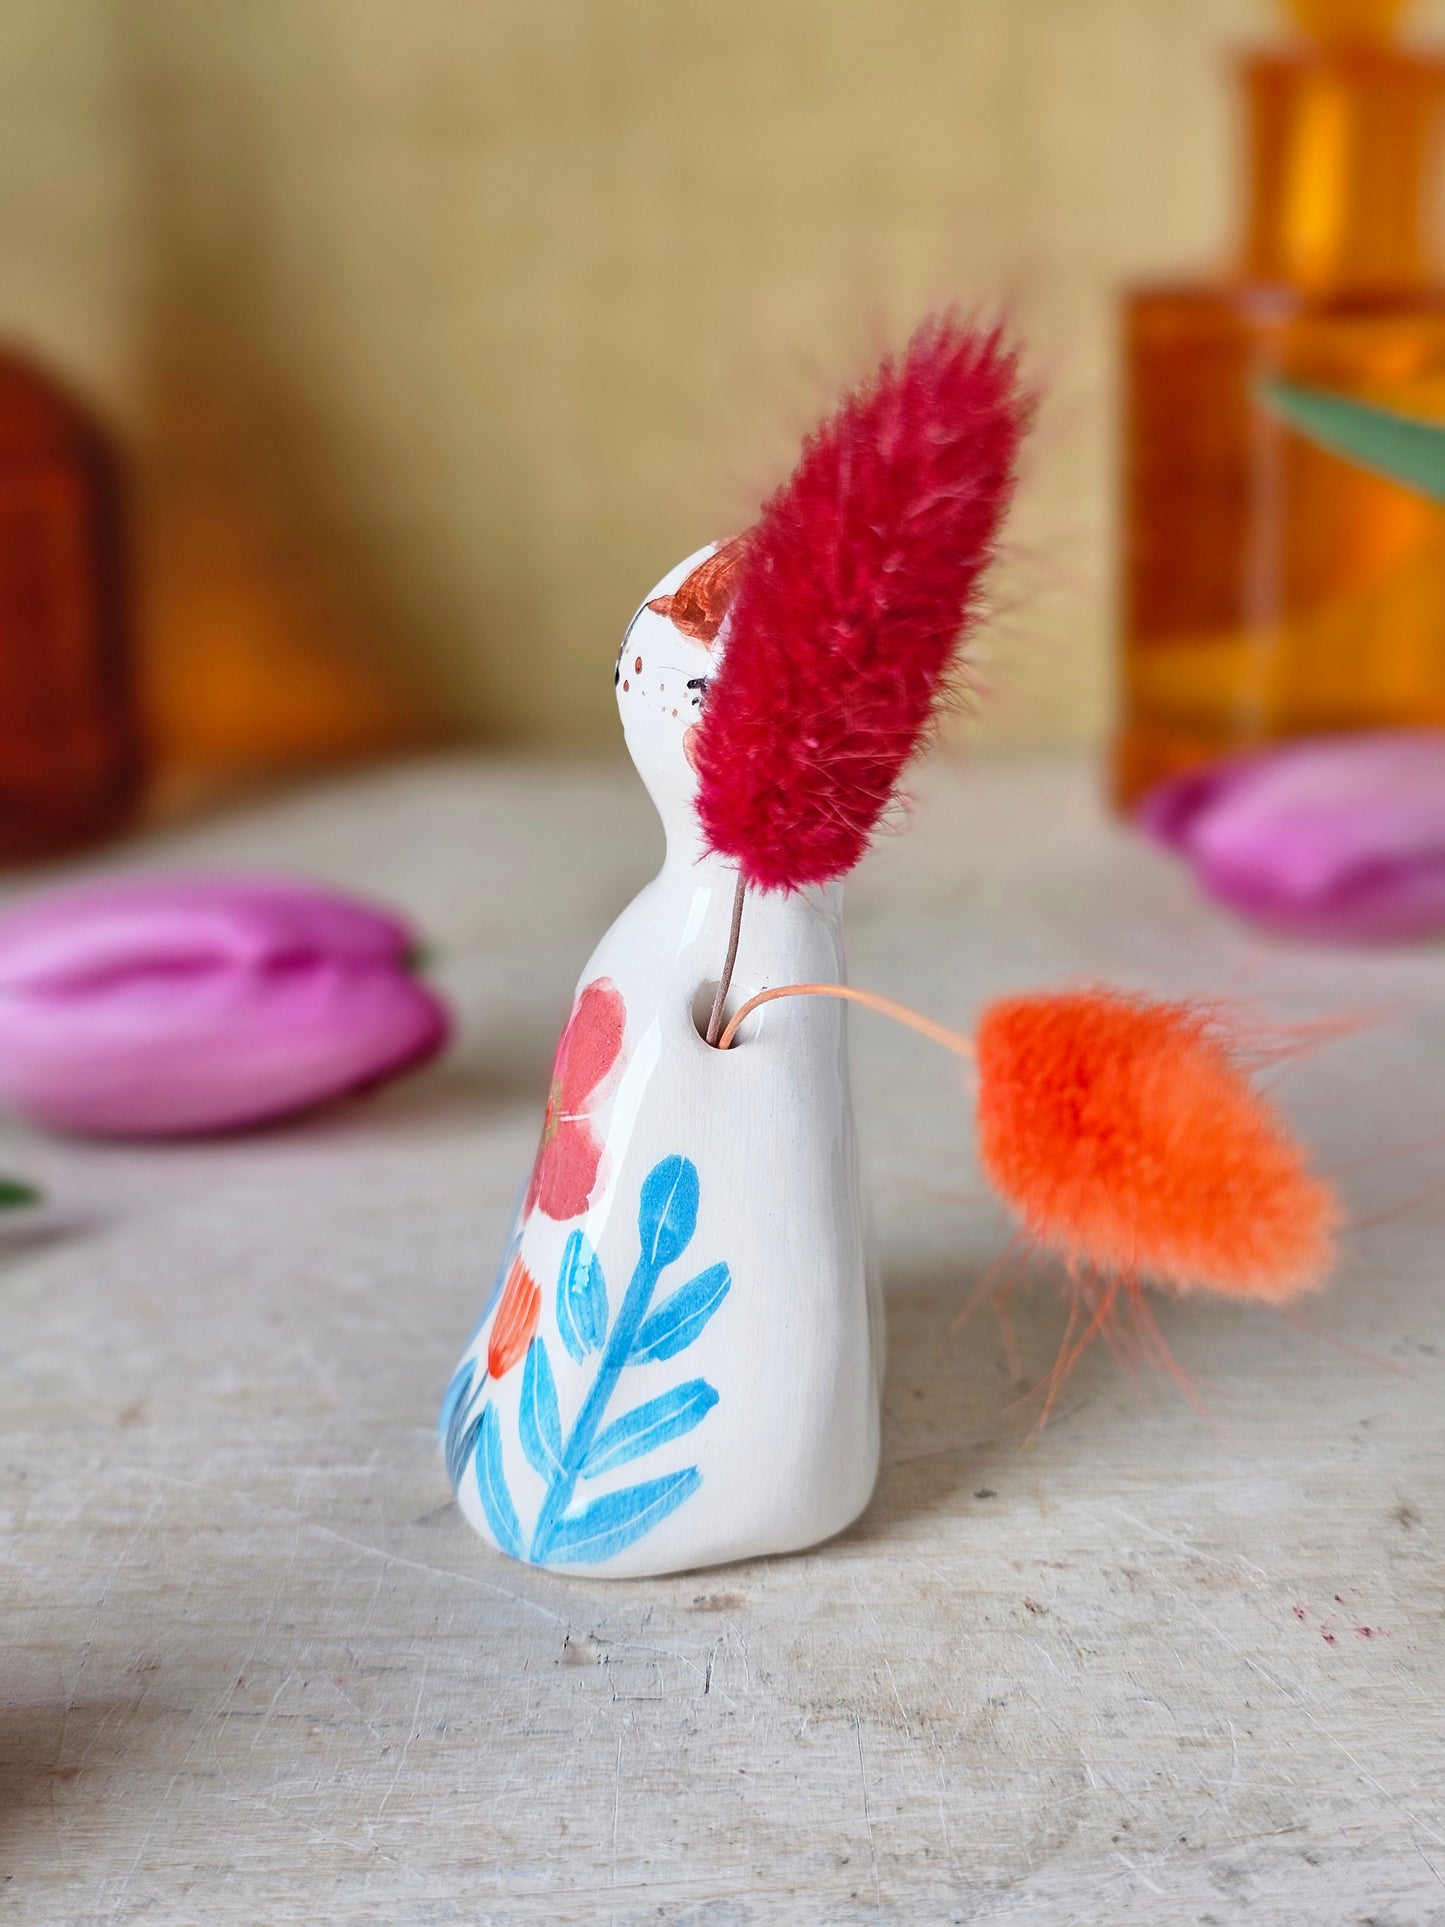 Hazel handmade ceramic flower holder